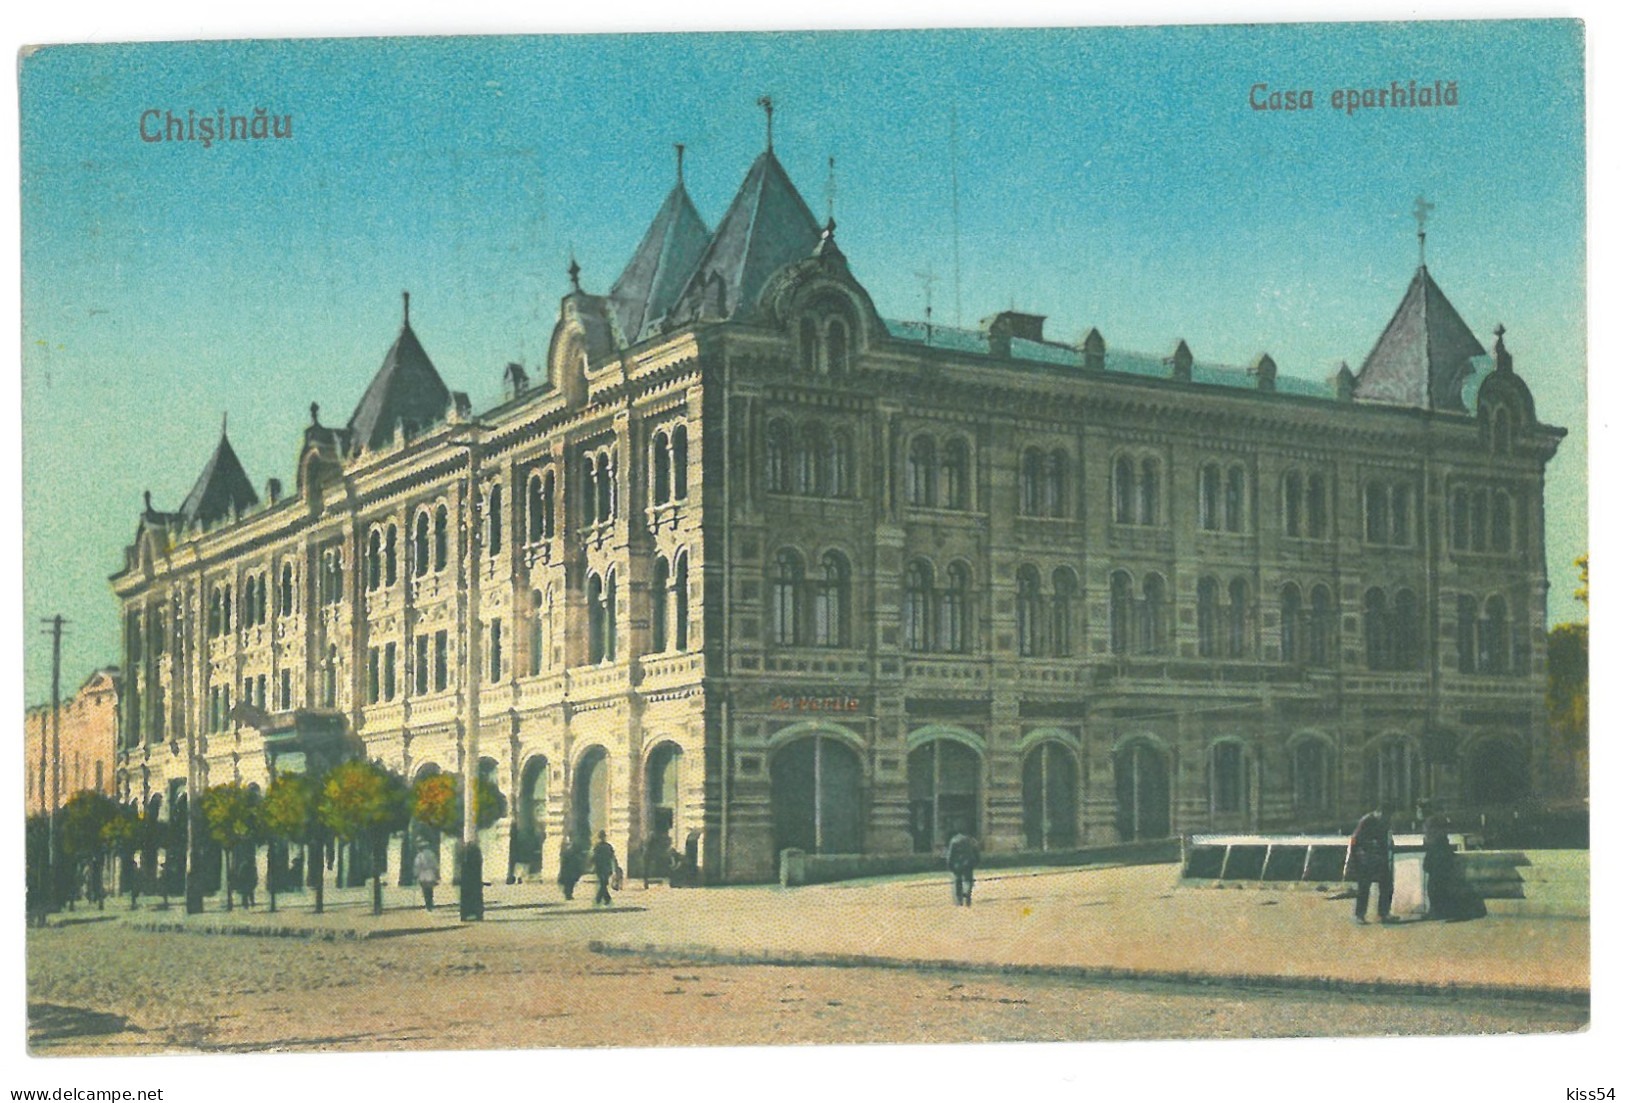 MOL 1 - 16270 CHISINAU, Casa Eparhiala, Moldova - Old Postcard - Used - 1925 - Moldavie